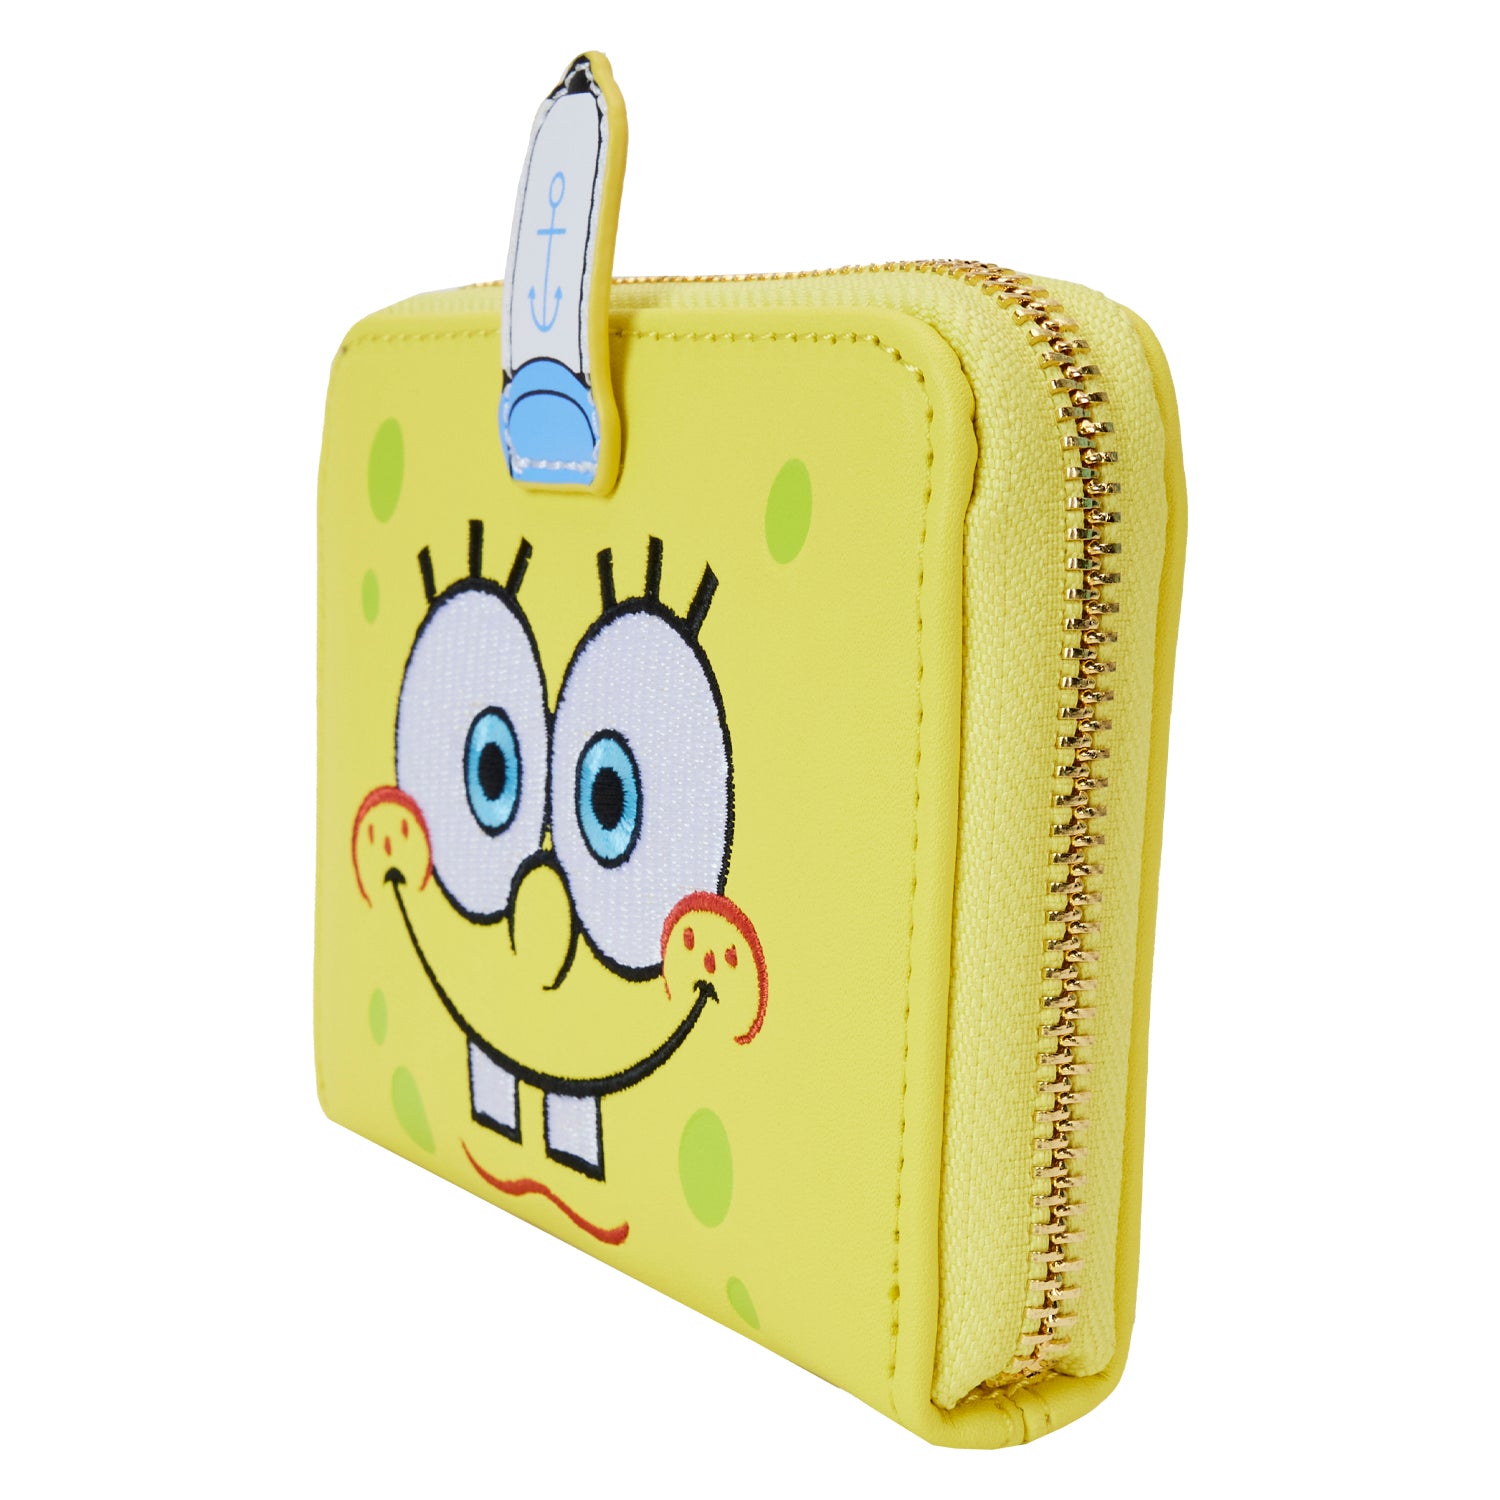 Nickelododeon | Spongebob Squarepants Zip Around Wallet